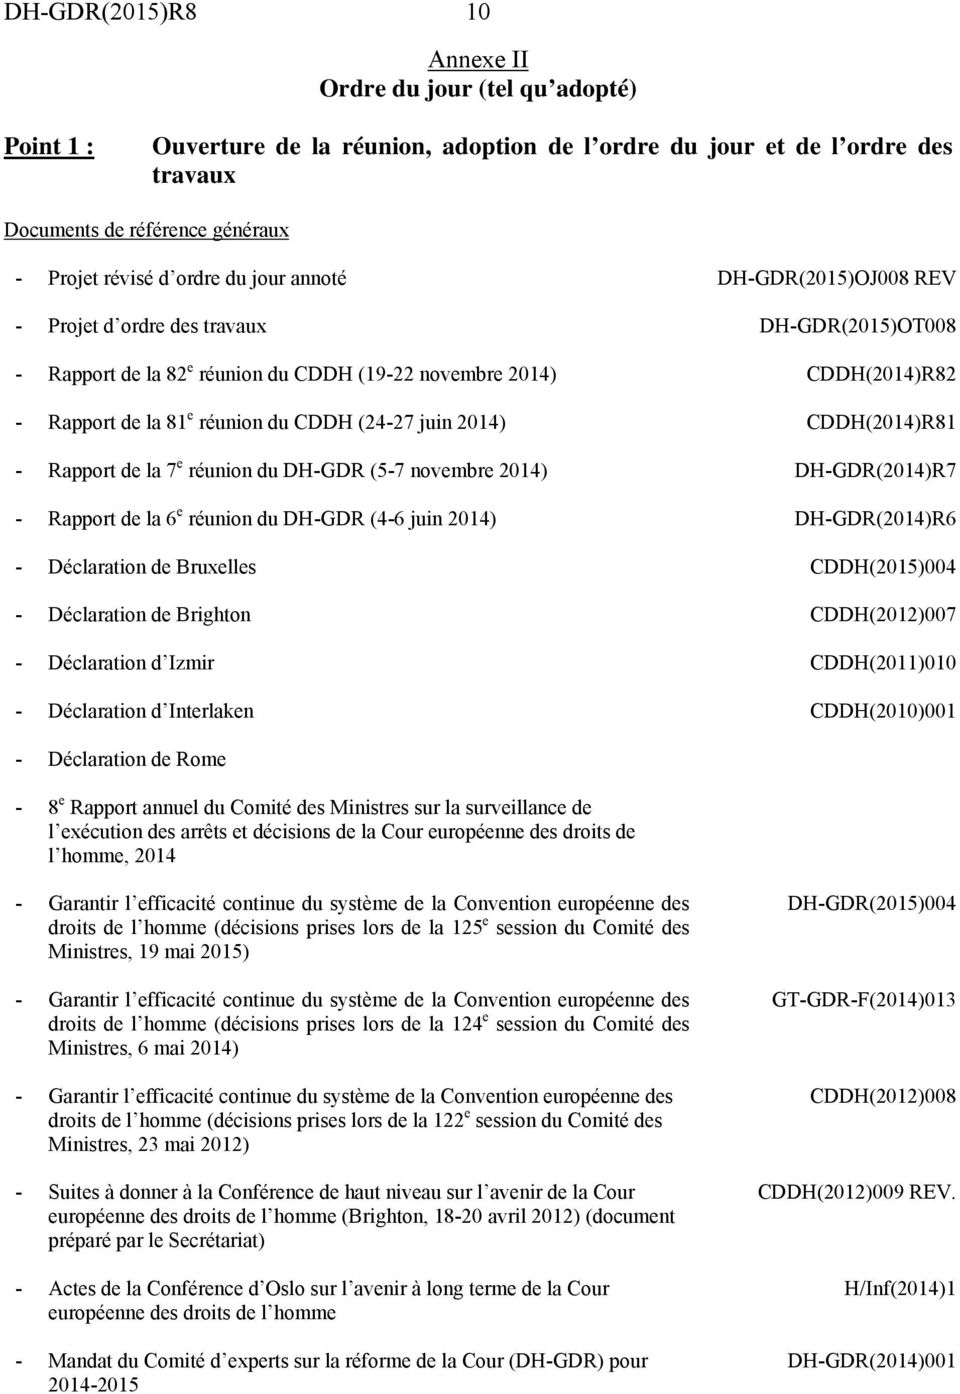 2014) CDDH(2014)R81 - Rapport de la 7 e réunion du DH-GDR (5-7 novembre 2014) DH-GDR(2014)R7 - Rapport de la 6 e réunion du DH-GDR (4-6 juin 2014) DH-GDR(2014)R6 - Déclaration de Bruxelles